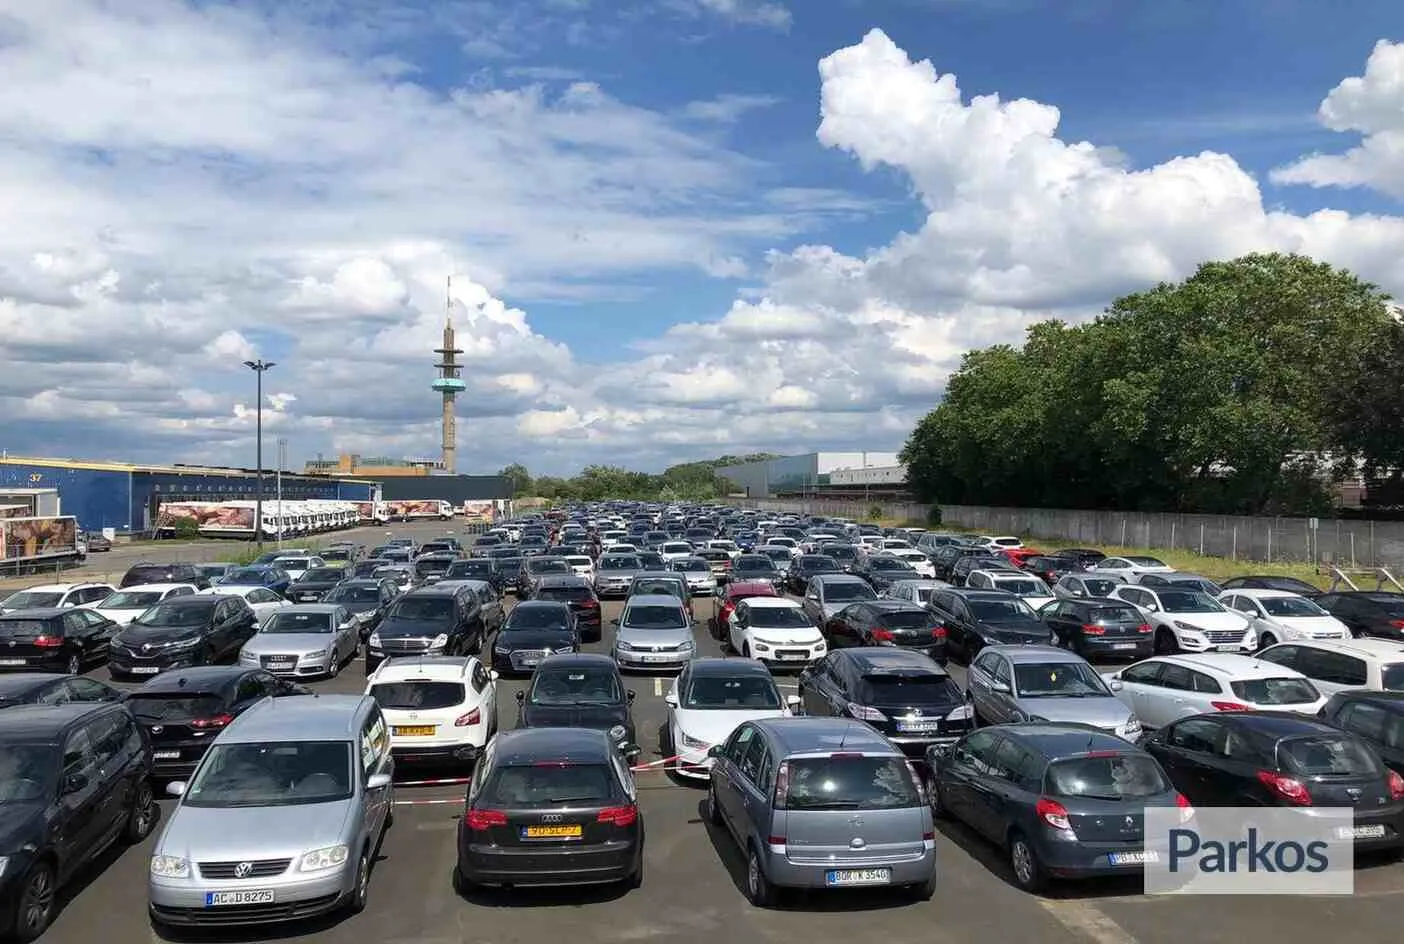 Parking Airea Köln - Parking Luchthaven Keulen - picture 1